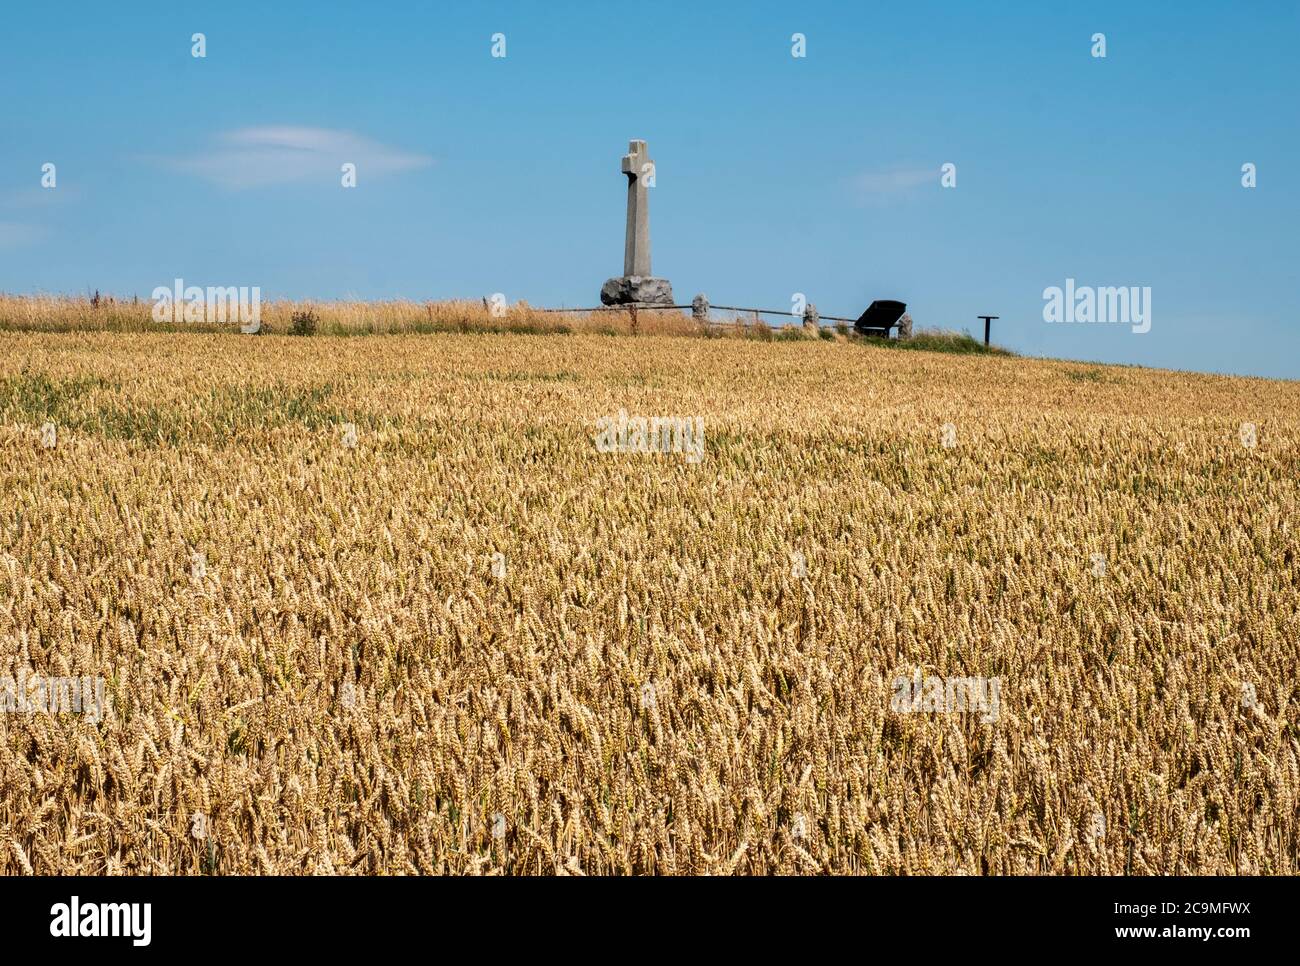 Granitsteinkreuz auf Branxton Hill, Northumberland zum Gedenken an die Gefallenen bei der Schlacht von Flodden Field am 9. September 1513. Stockfoto